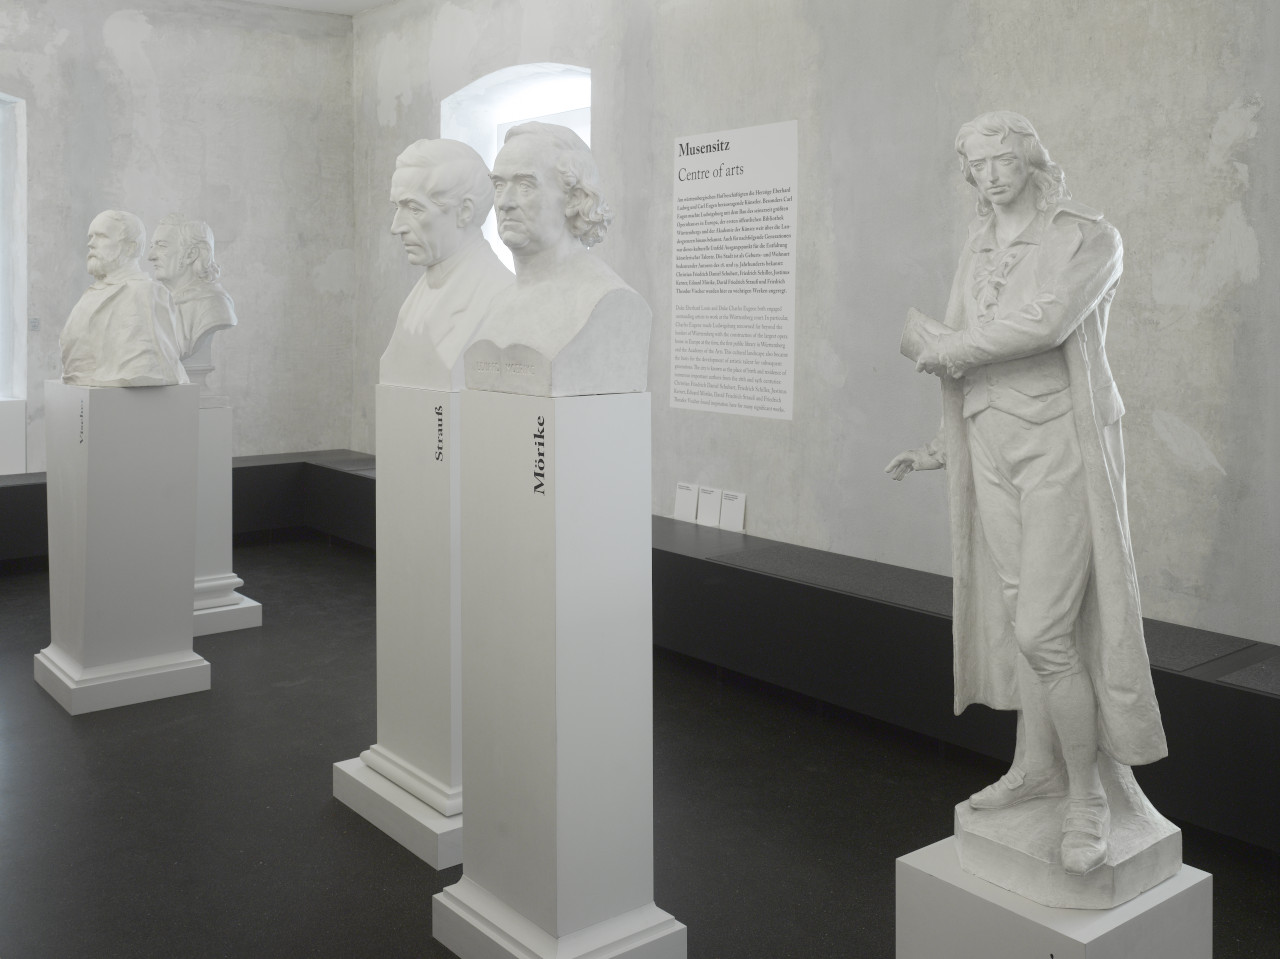 Dauerausstellung 300 Jahre - 300 Dinge Planstadt Ludwigsburg, Musensitz